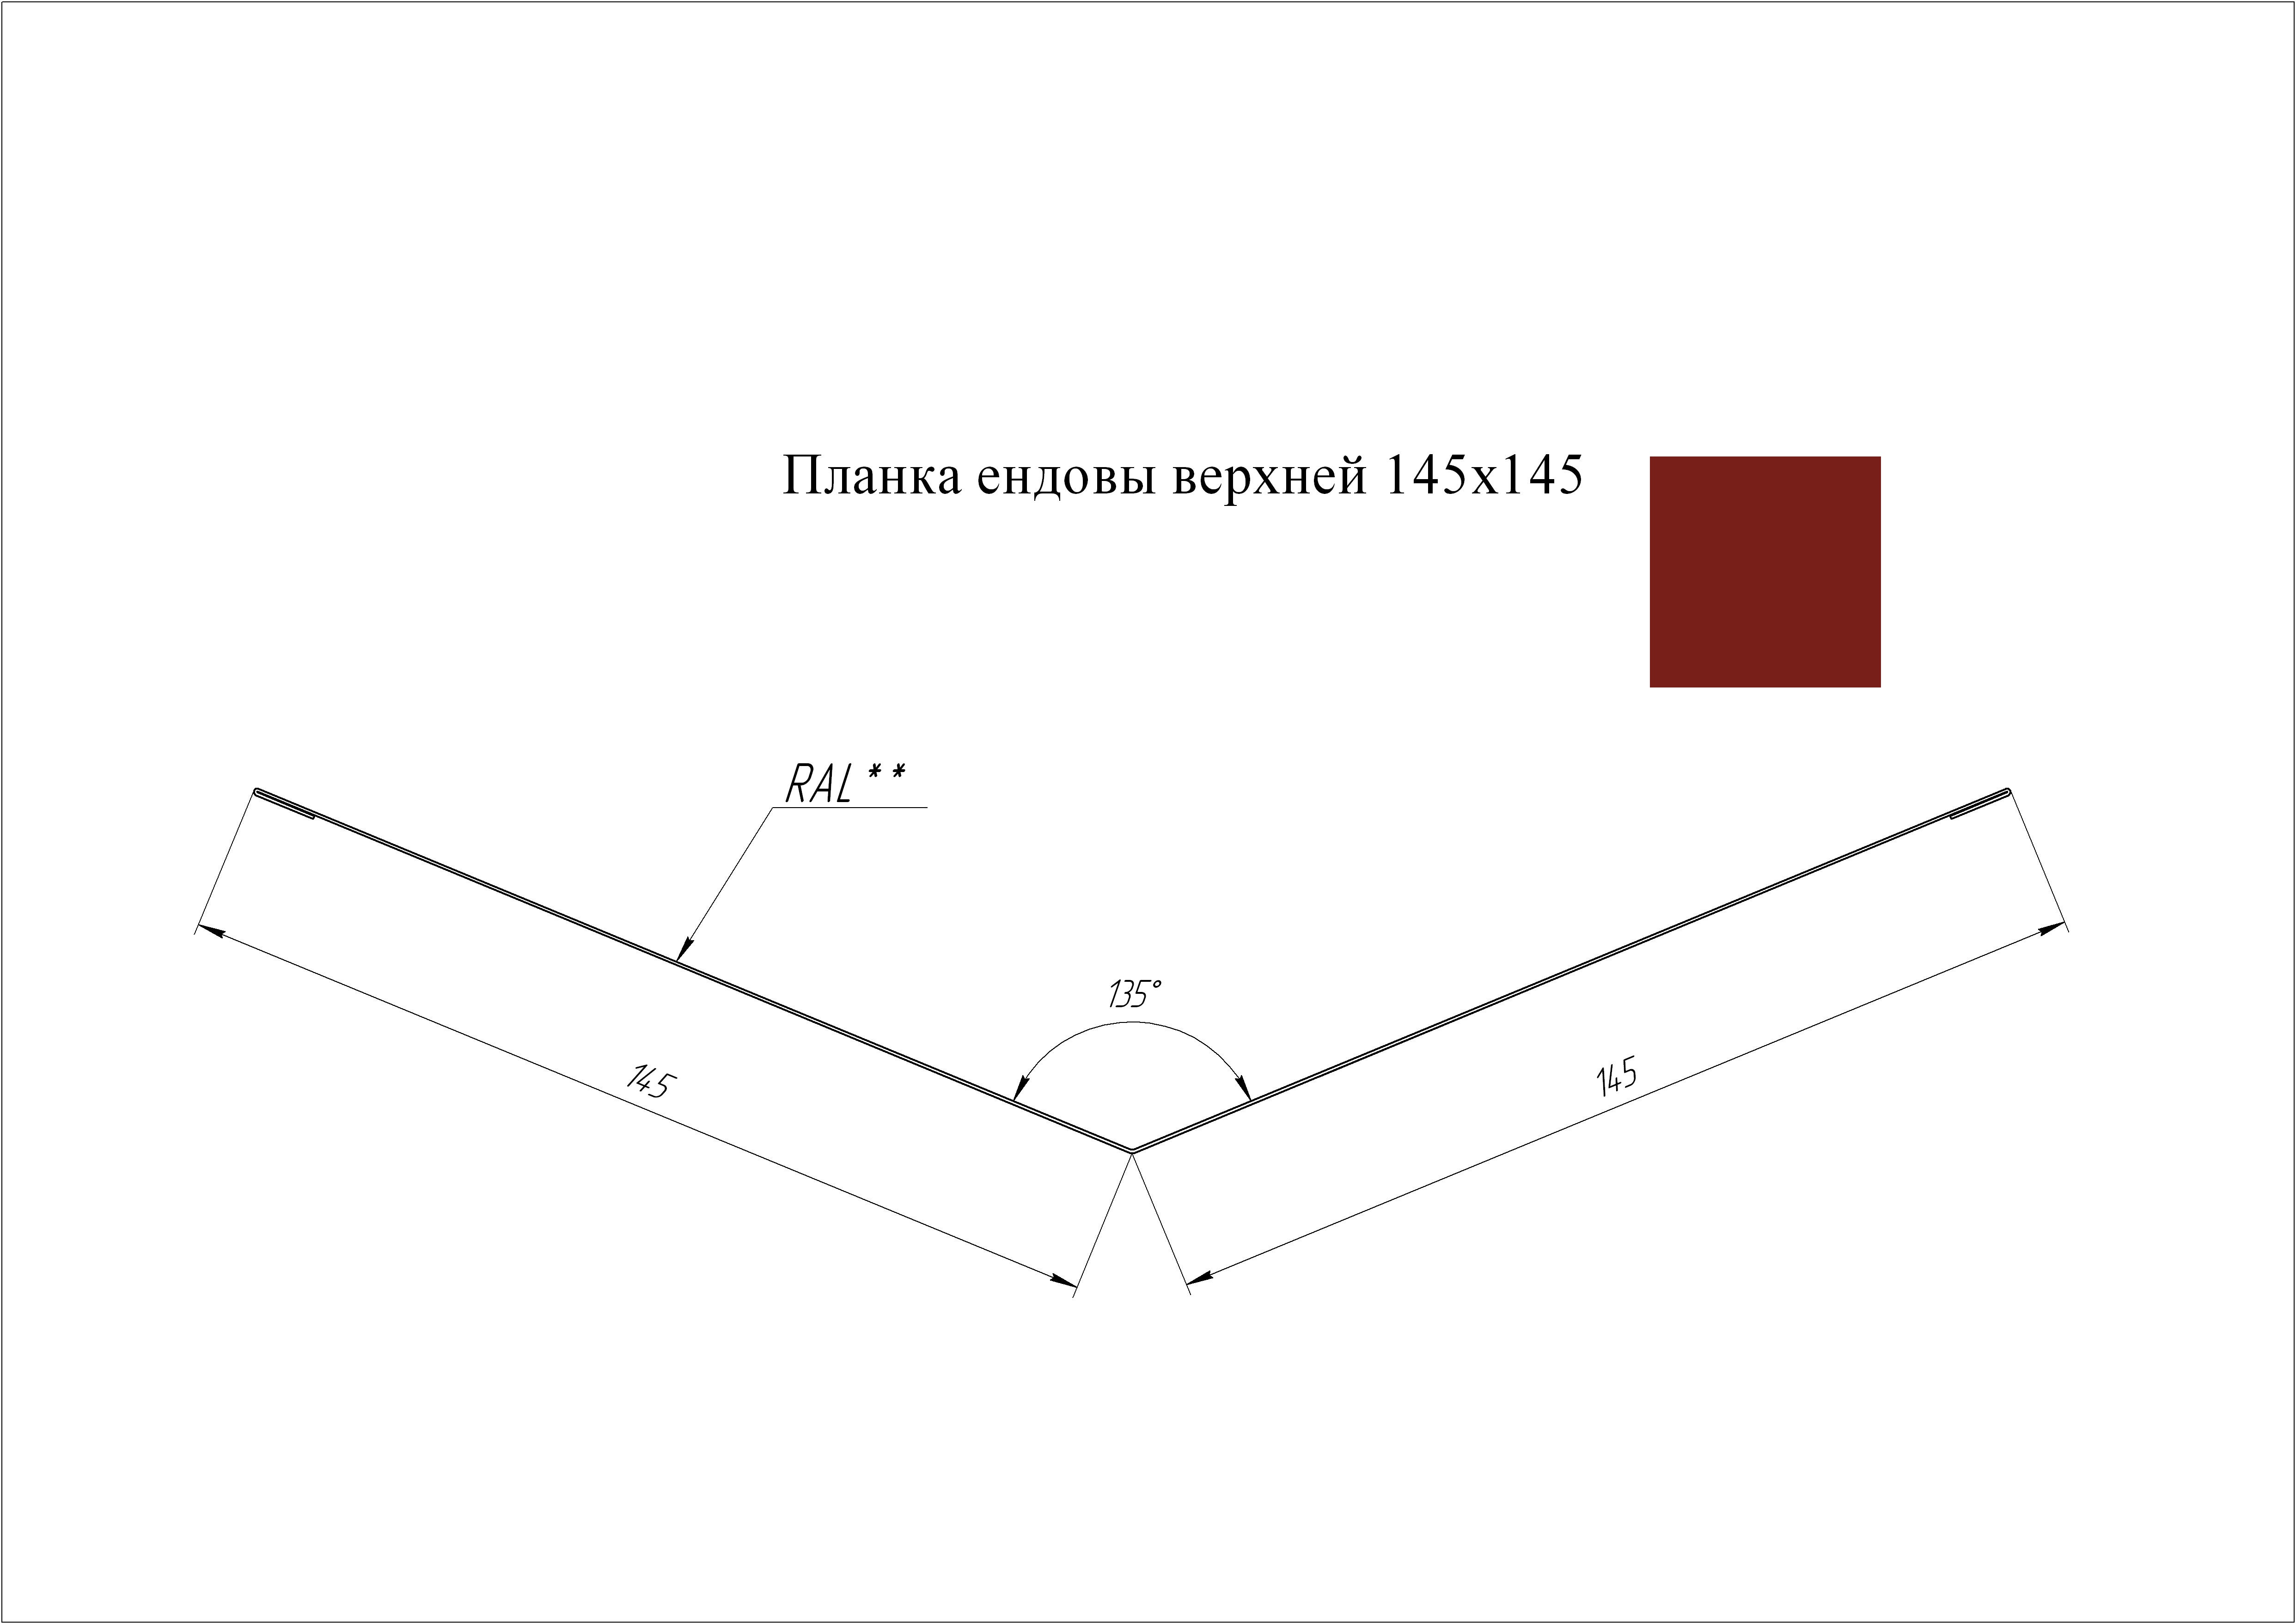 Ендова верхняя 145*145 мм L=2 м GL PE-полиэстер 0,45 RAL 3011 - коричнево-красный